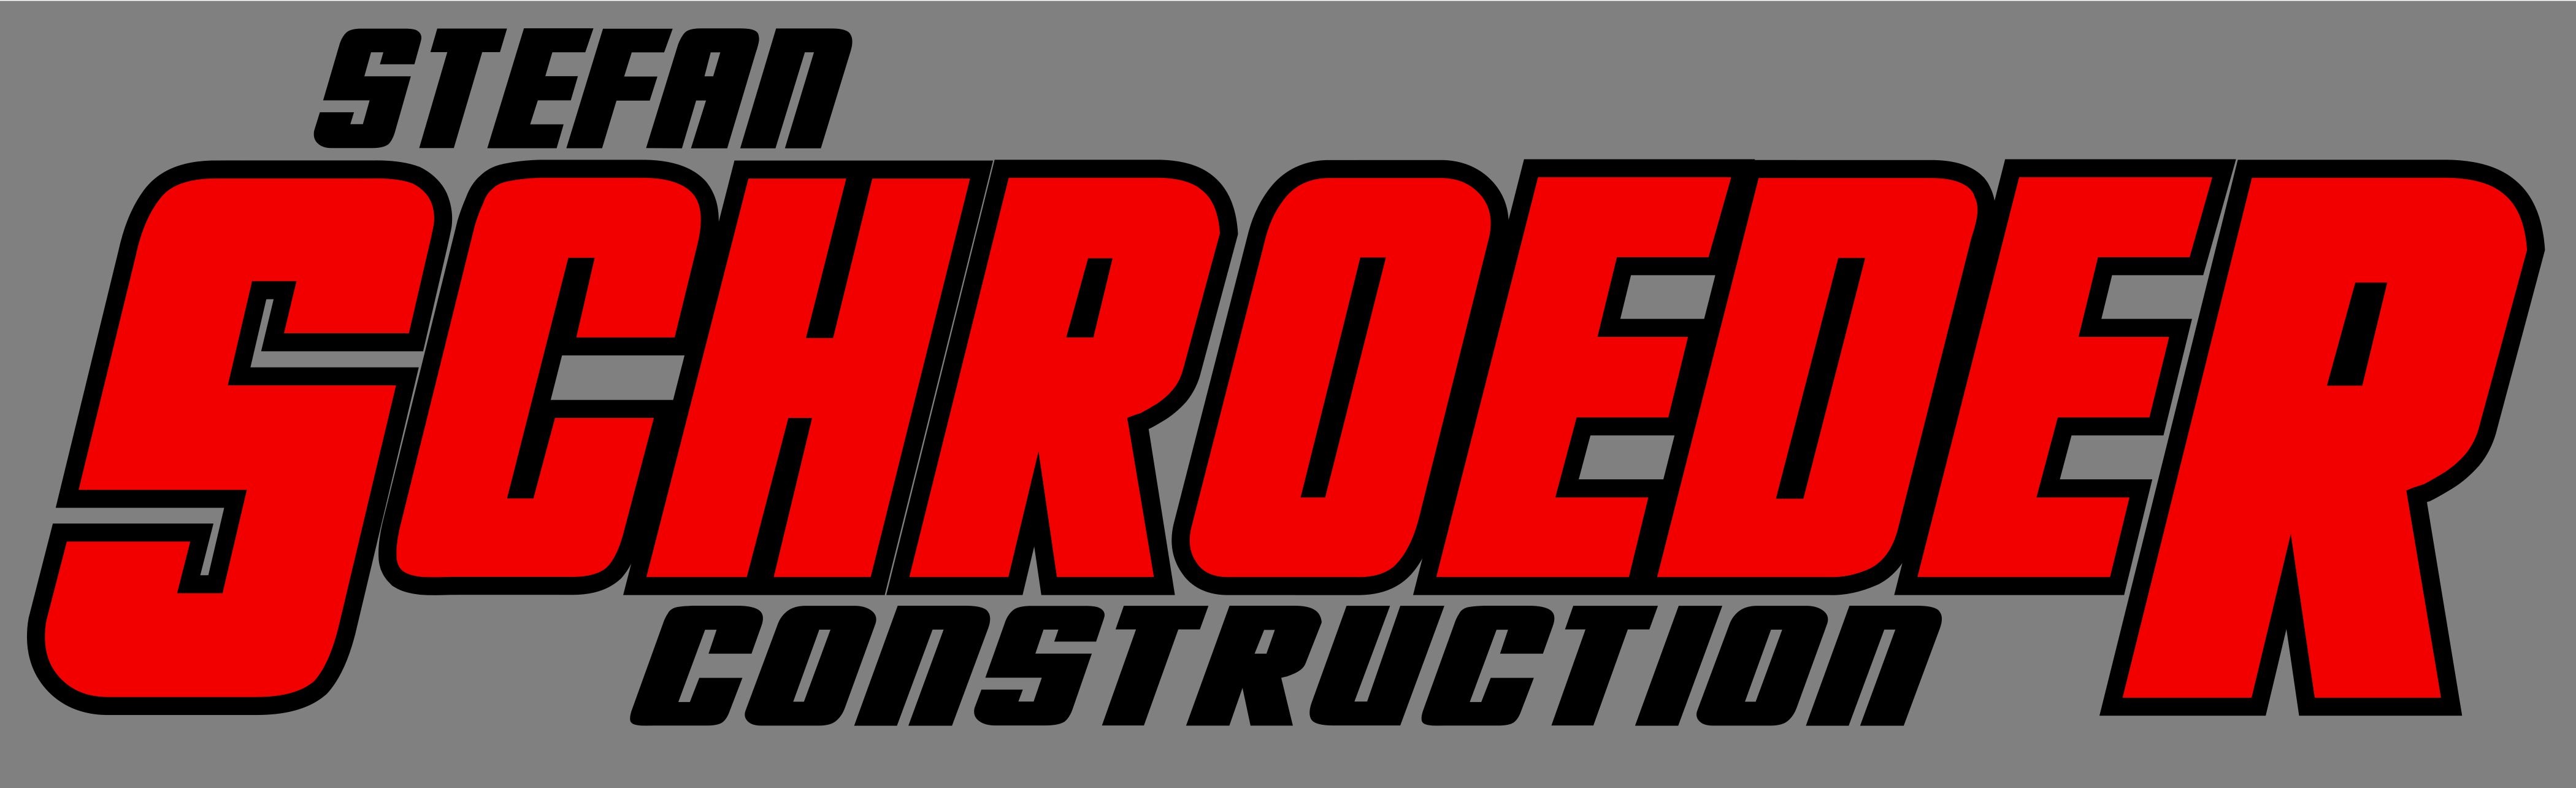 Stefan Schroeder Construction Logo